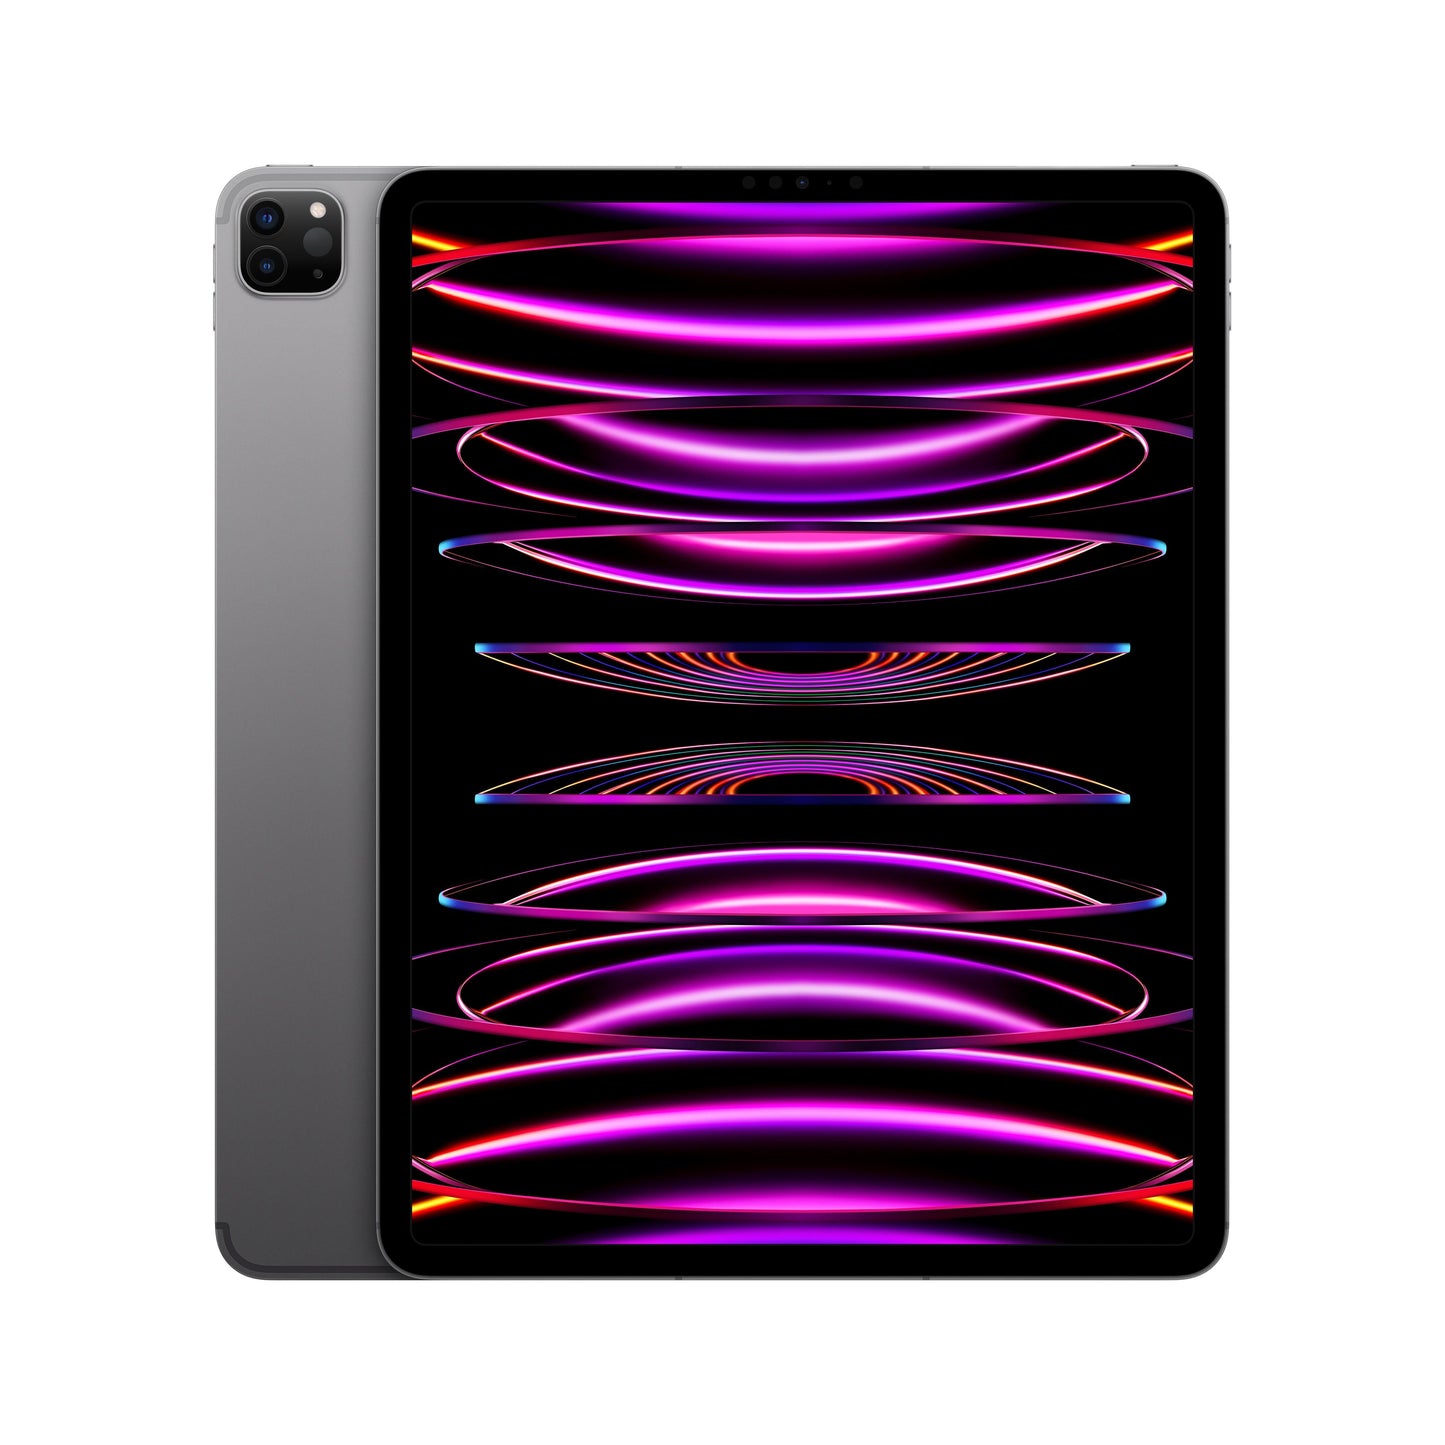 2022 12.9-inch iPad Pro Wi-Fi + Cellular 2TB - Space Grey (6th generation)